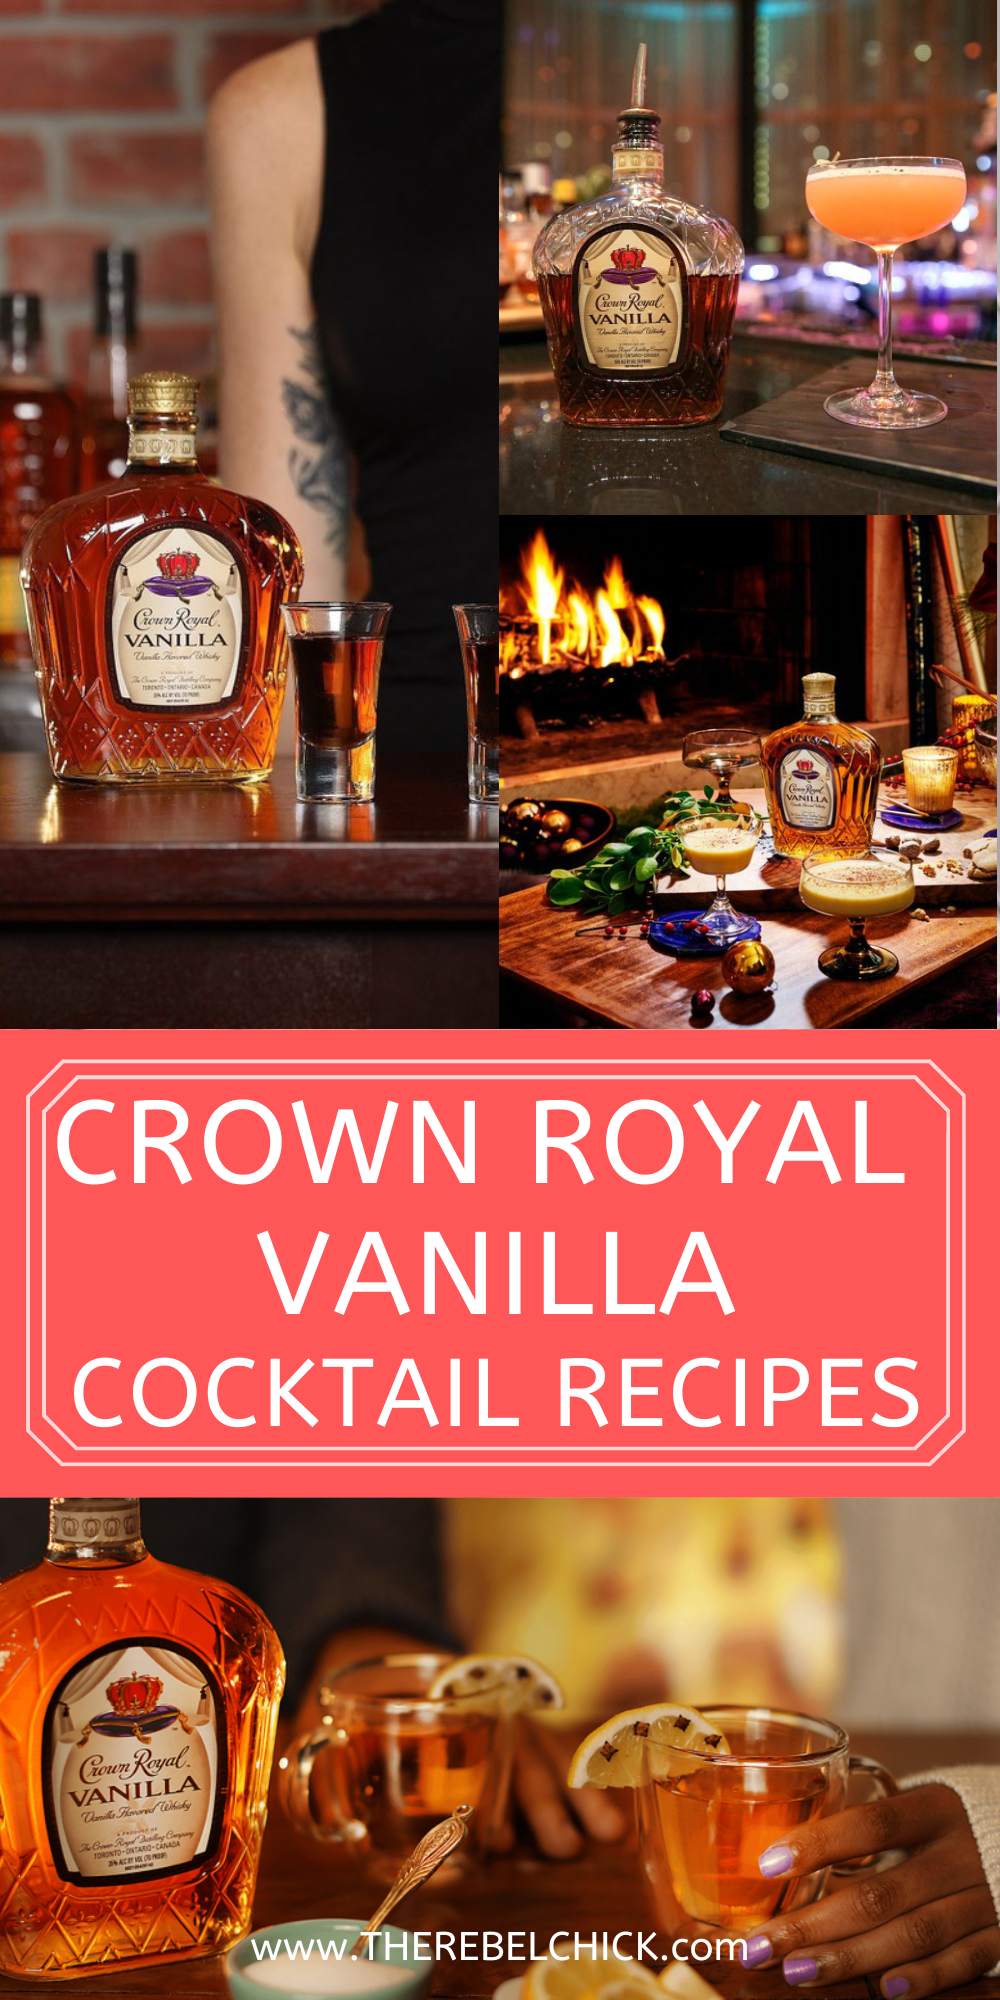 Crown Royal Vanilla Cocktail Recipes